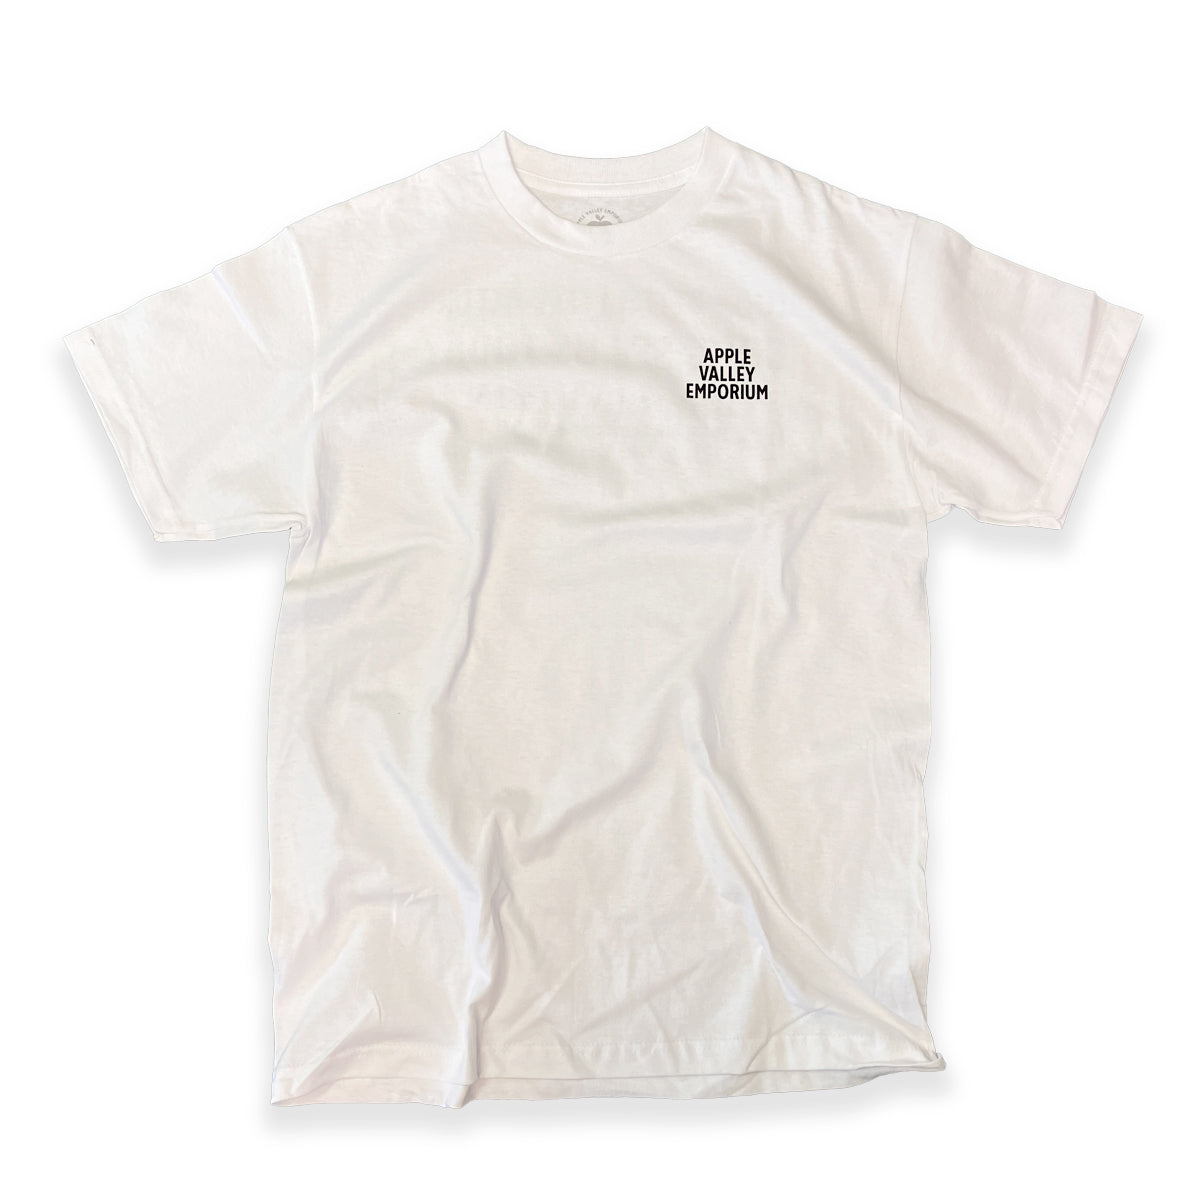 AVE Look Better Feel Better Short Sleeve T-Shirt (White) - Apple Valley Emporium